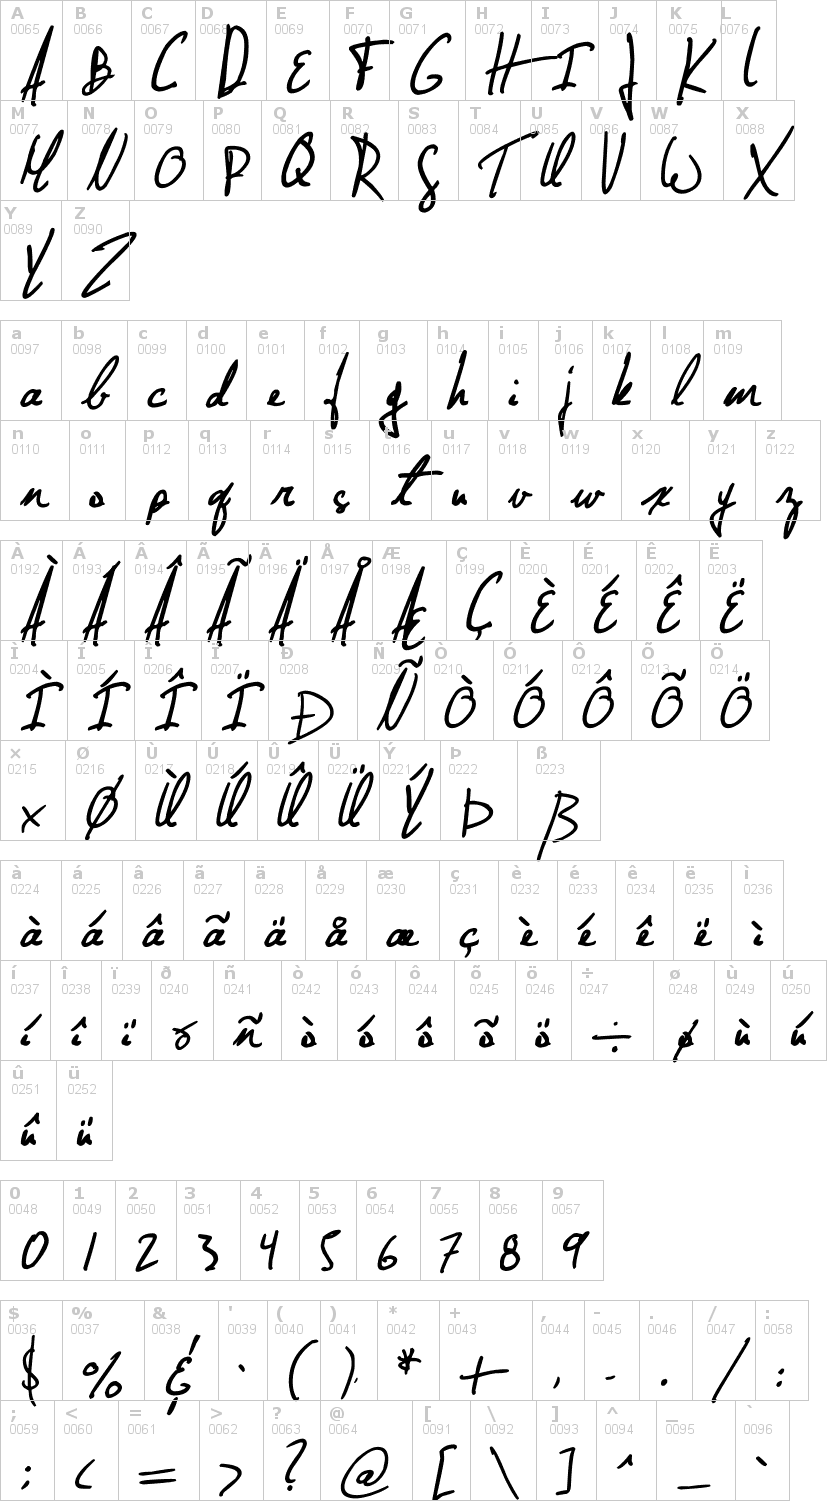 Lettere dell'alfabeto del font jellyka-nathaniel-a-mystery con le quali è possibile realizzare adesivi prespaziati